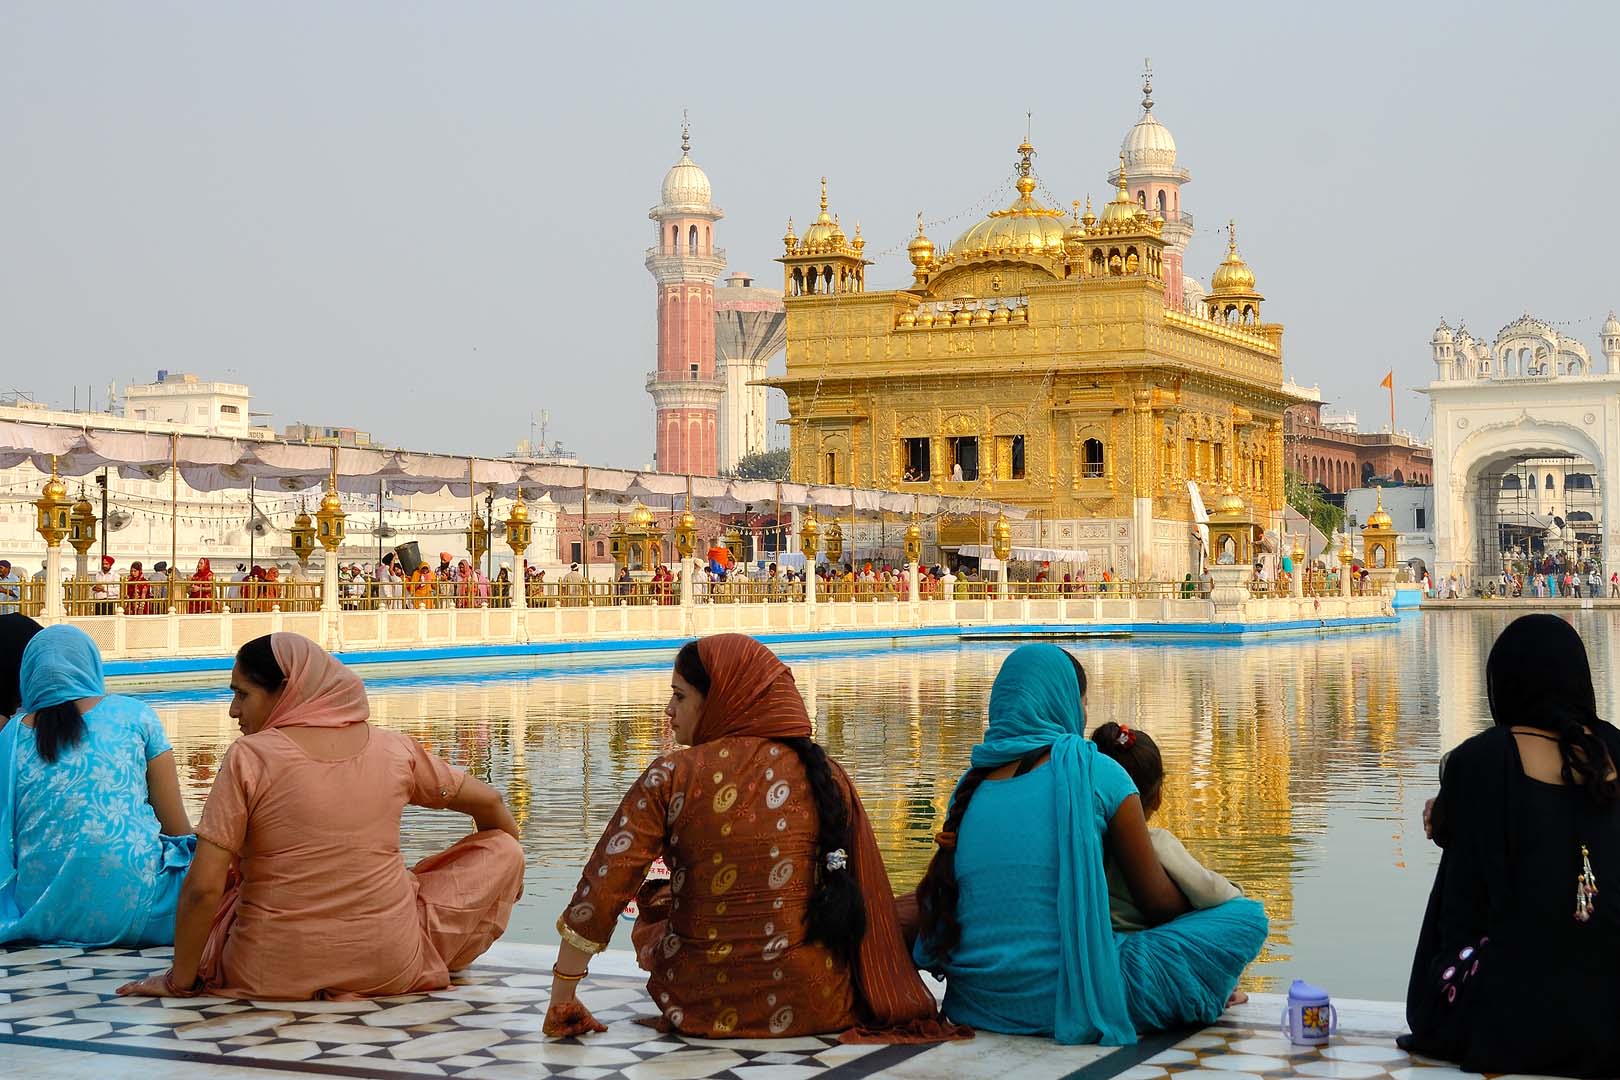 goldener Tempel von Amritsar, Indien